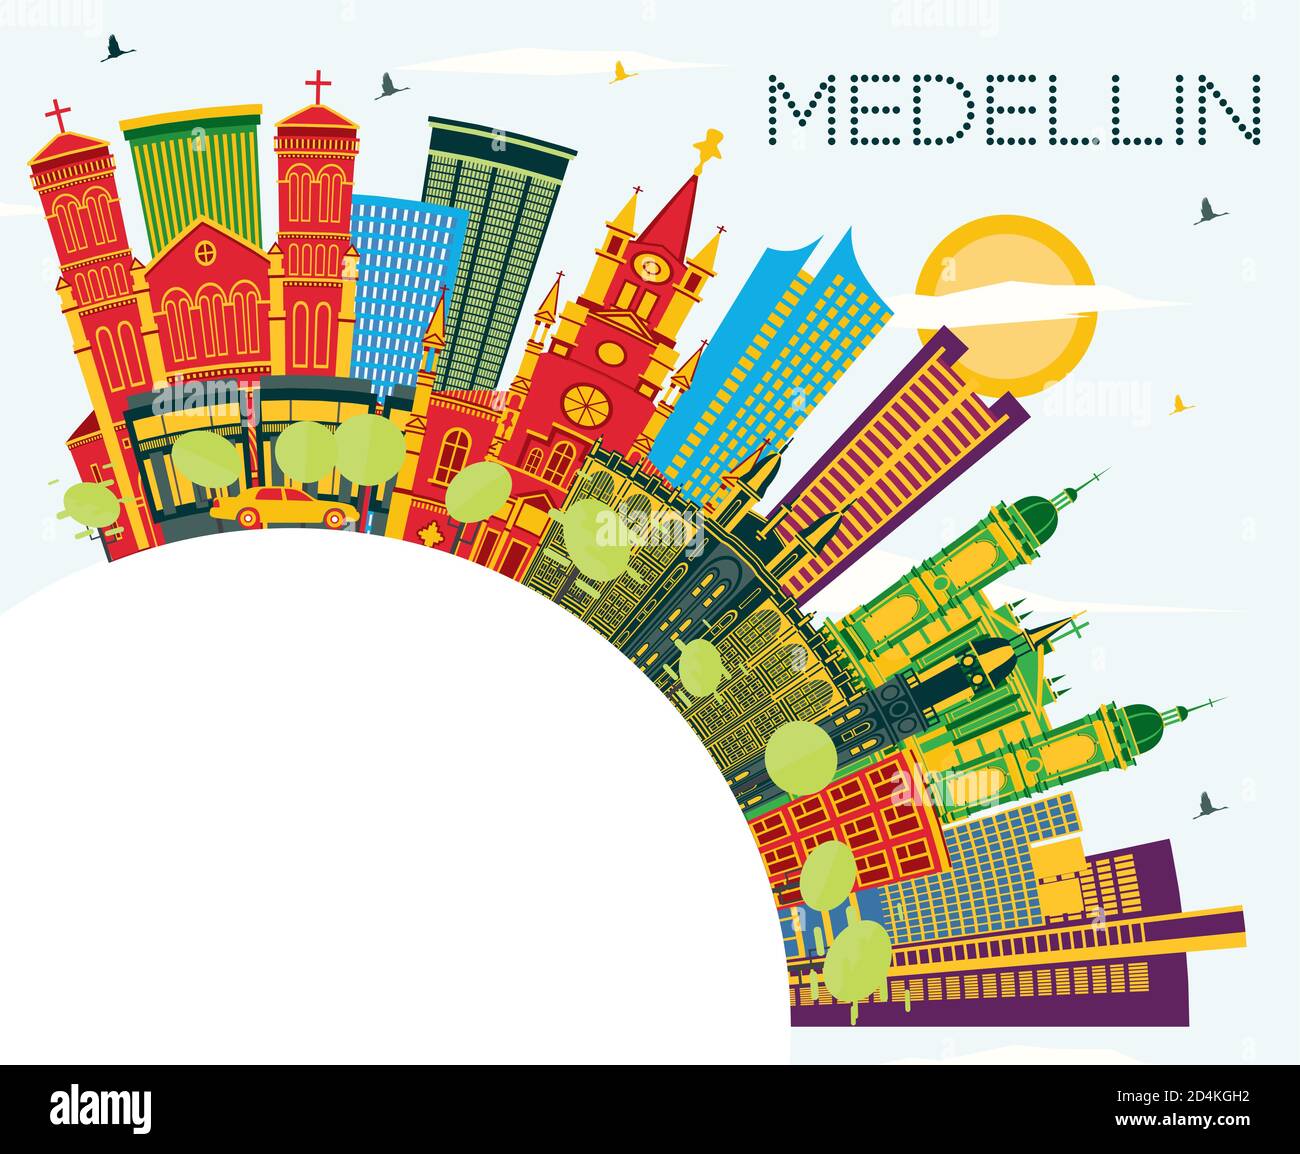 Medellin Colombia City Skyline avec des bâtiments couleur, ciel bleu et espace de copie. Illustration vectorielle. Voyages d'affaires et tourisme avec Historic B Illustration de Vecteur